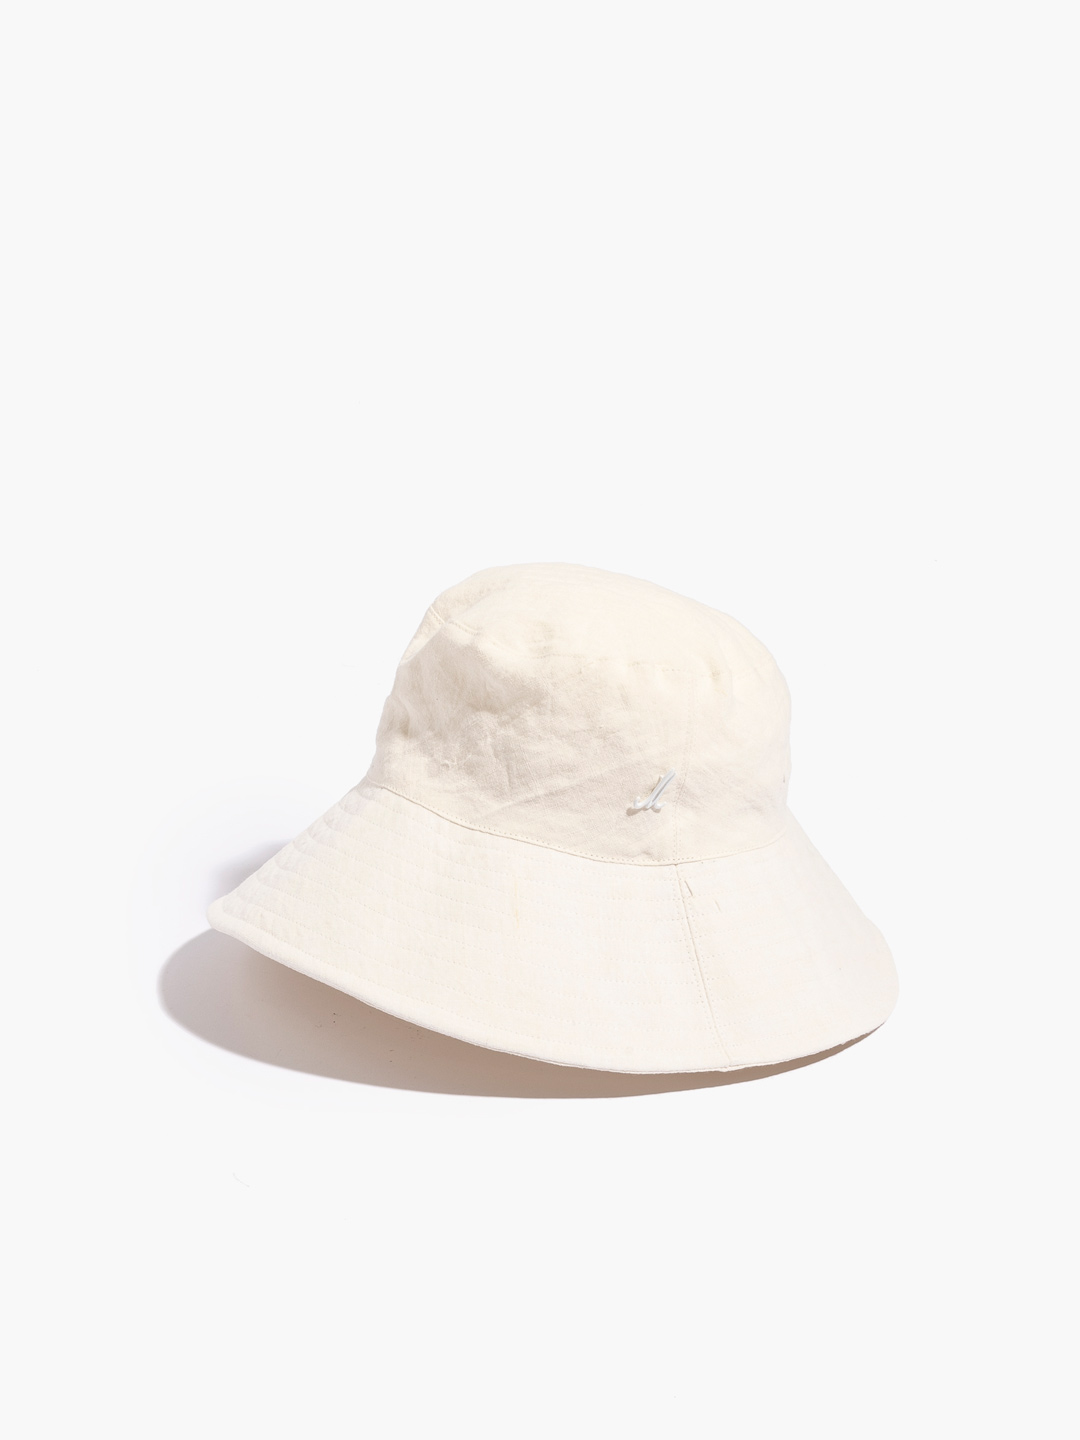 WIMBERT Bucket Hat - White